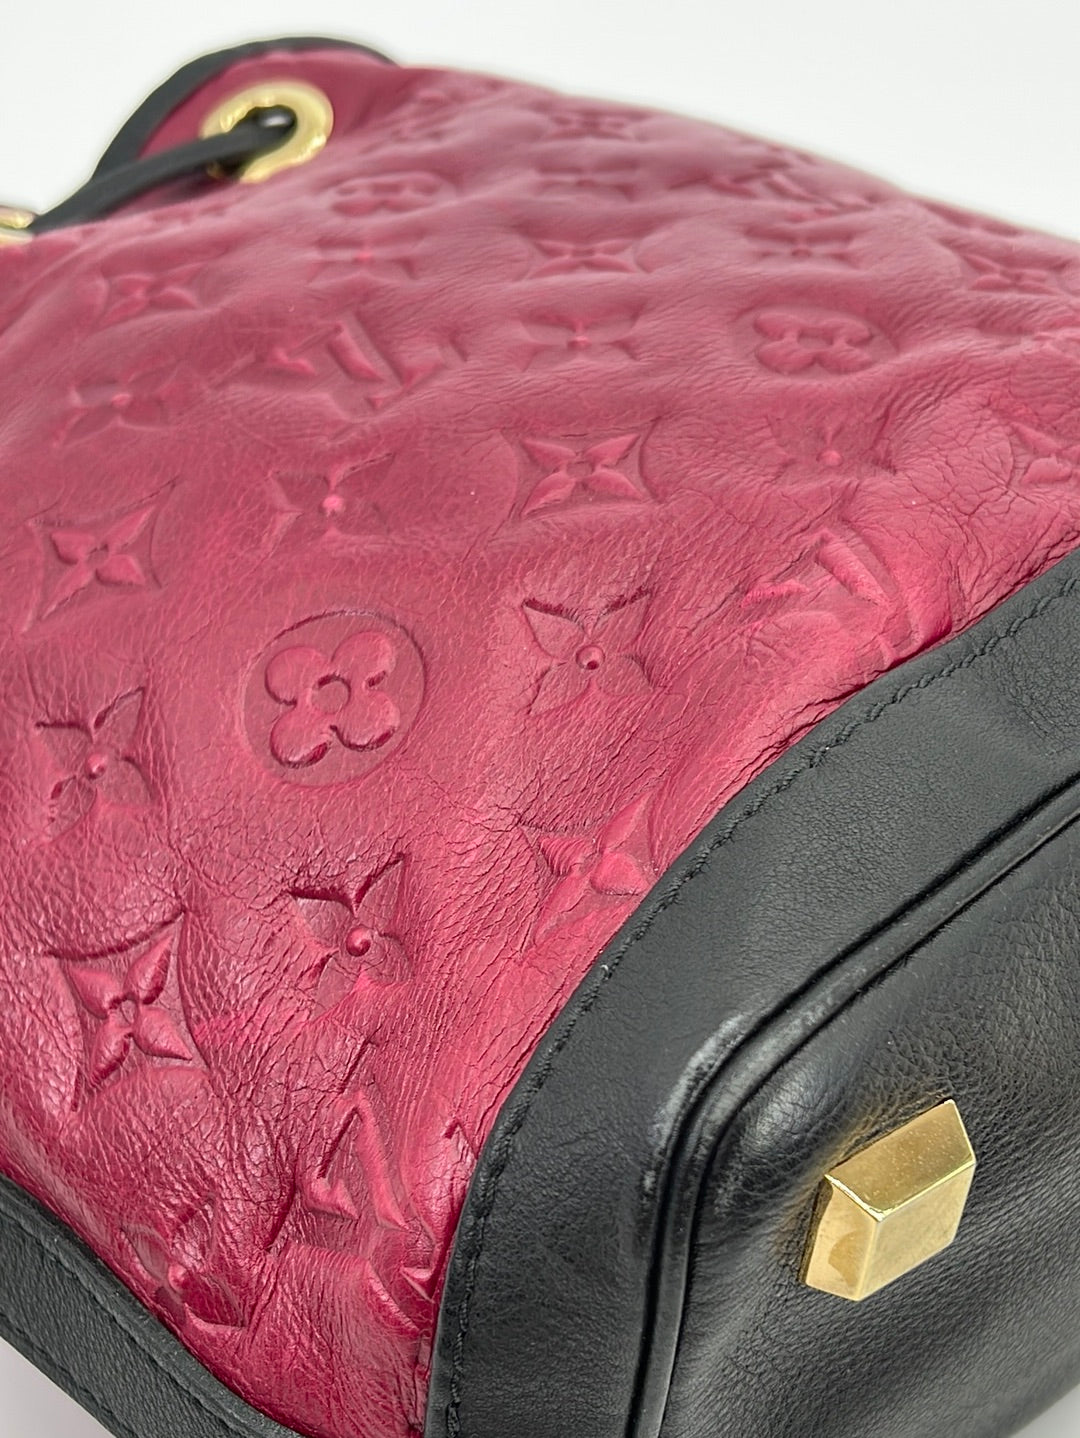 Louis Vuitton Handbags $1000